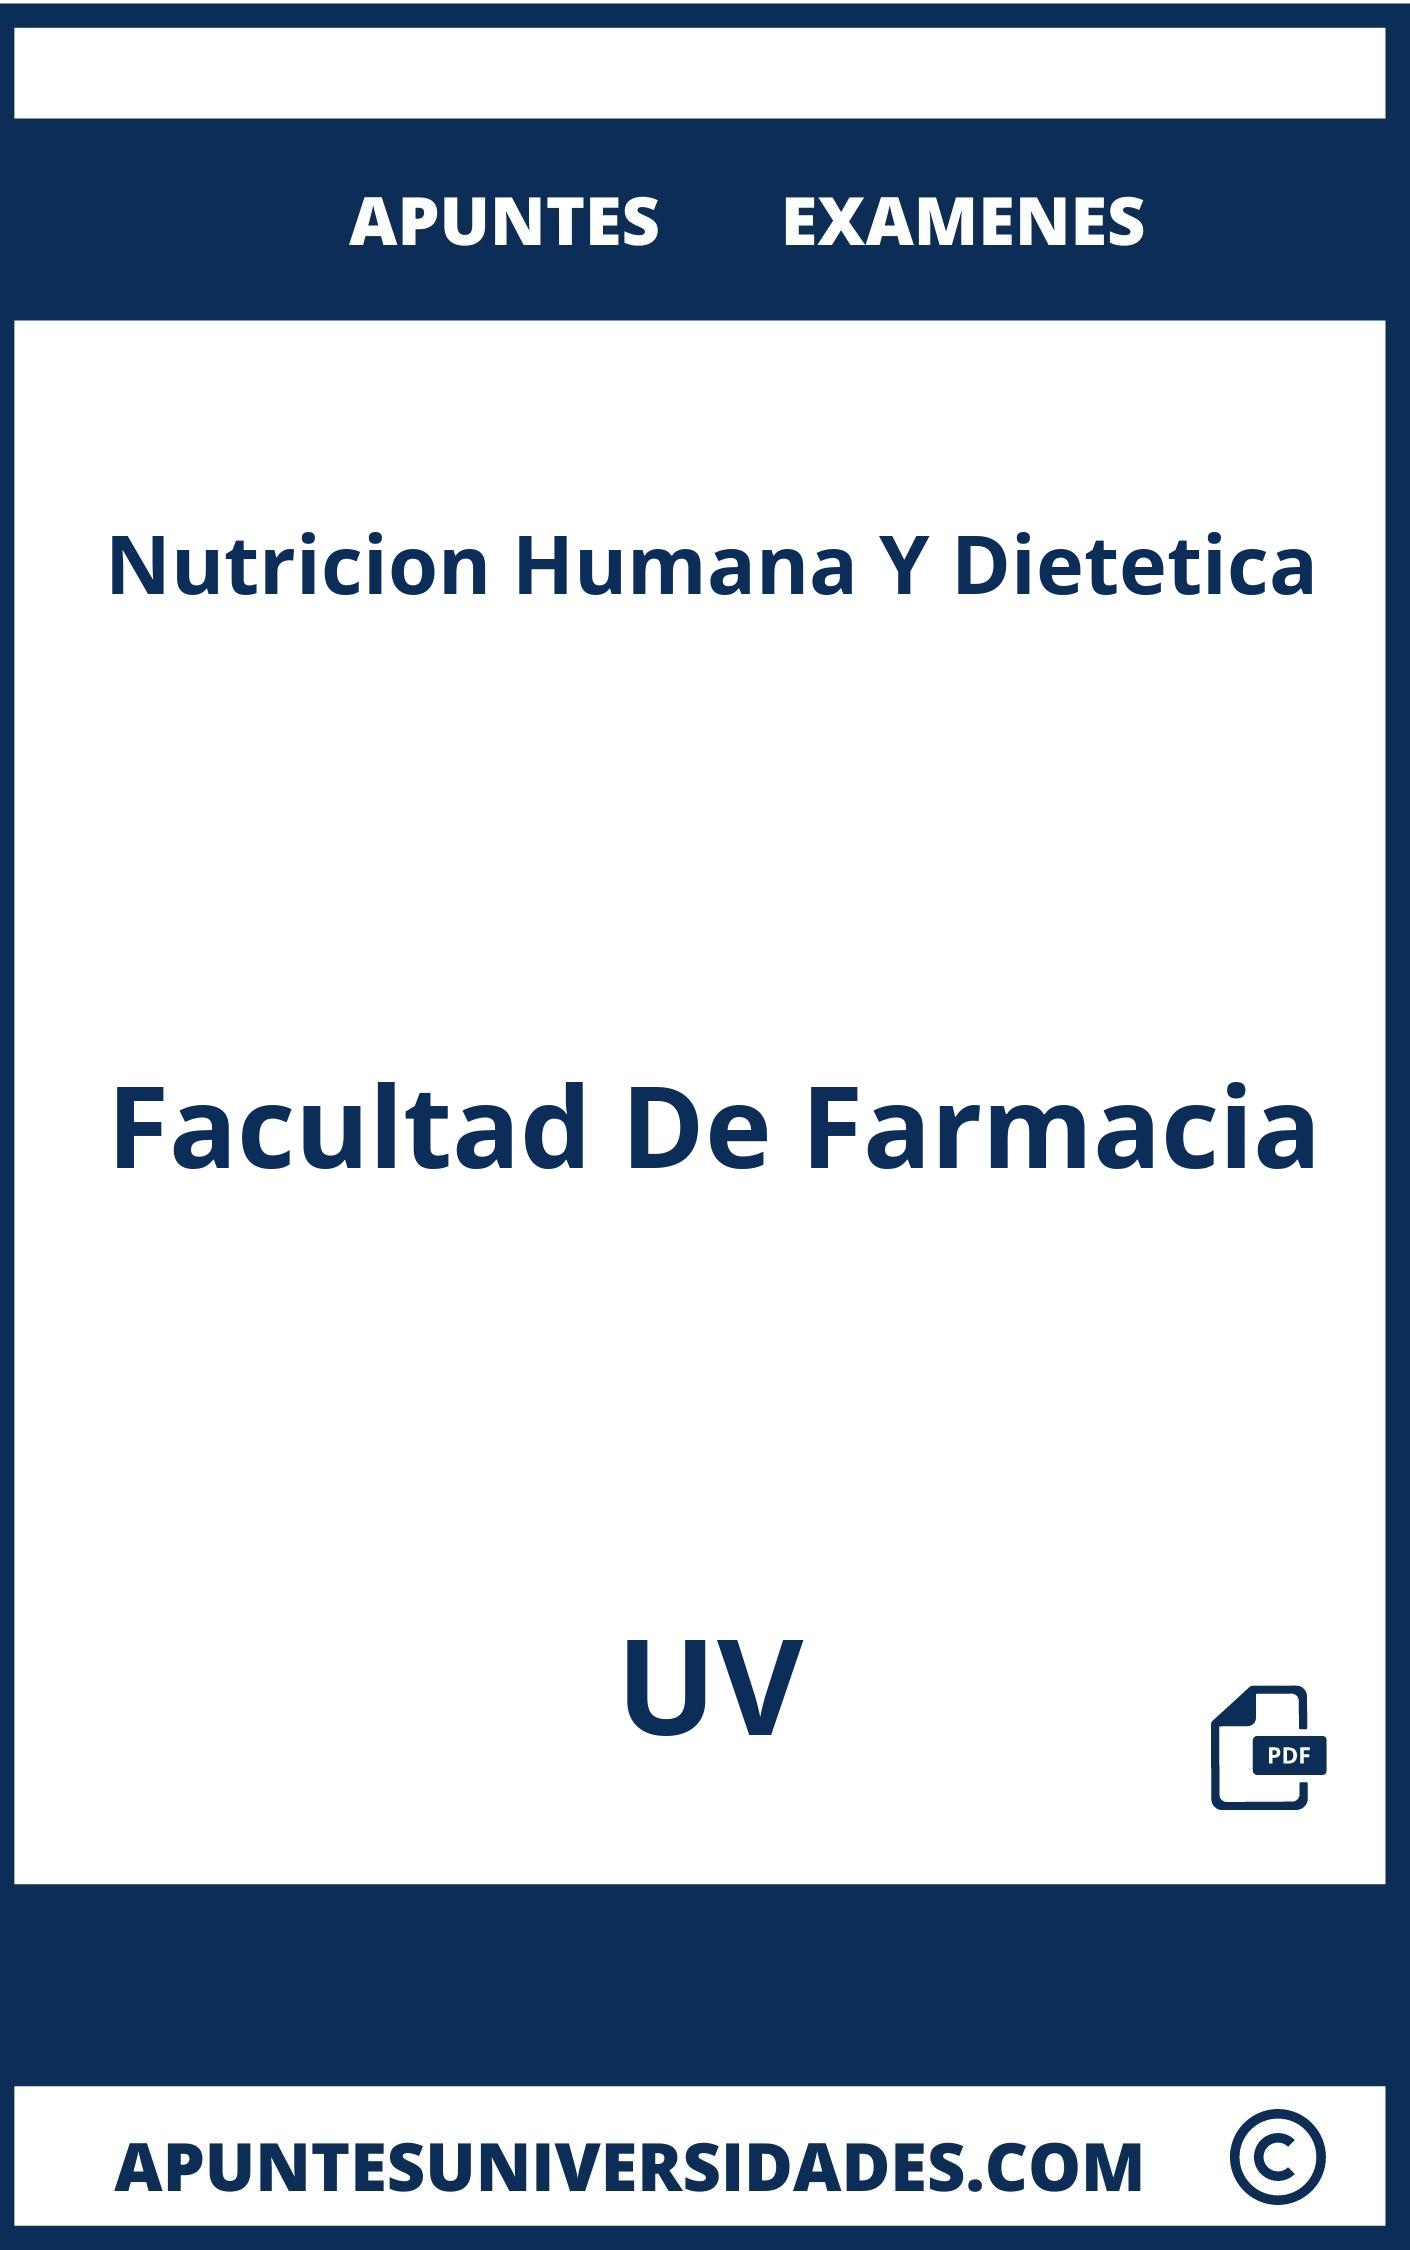 Nutricion Humana Y Dietetica UV Examenes Apuntes